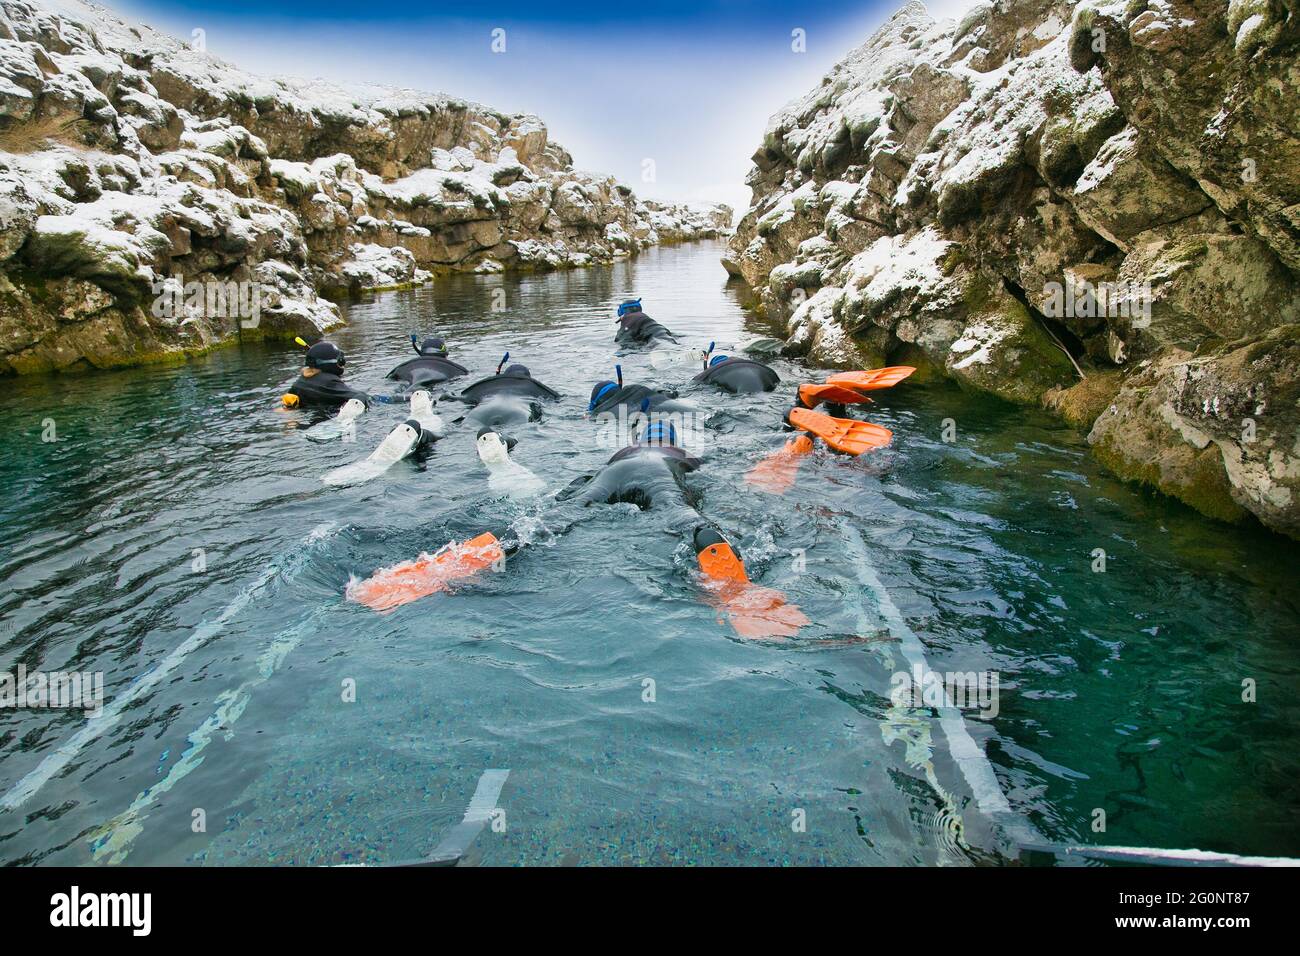 Silfra, Island-19. Feb 2020: Schnorchler bereiten sich auf das Eindringen in das Wasser am Silfra Rift vor, dem Ort, an dem sich eurasische und die amerikanische tektonische Platte befinden Stockfoto